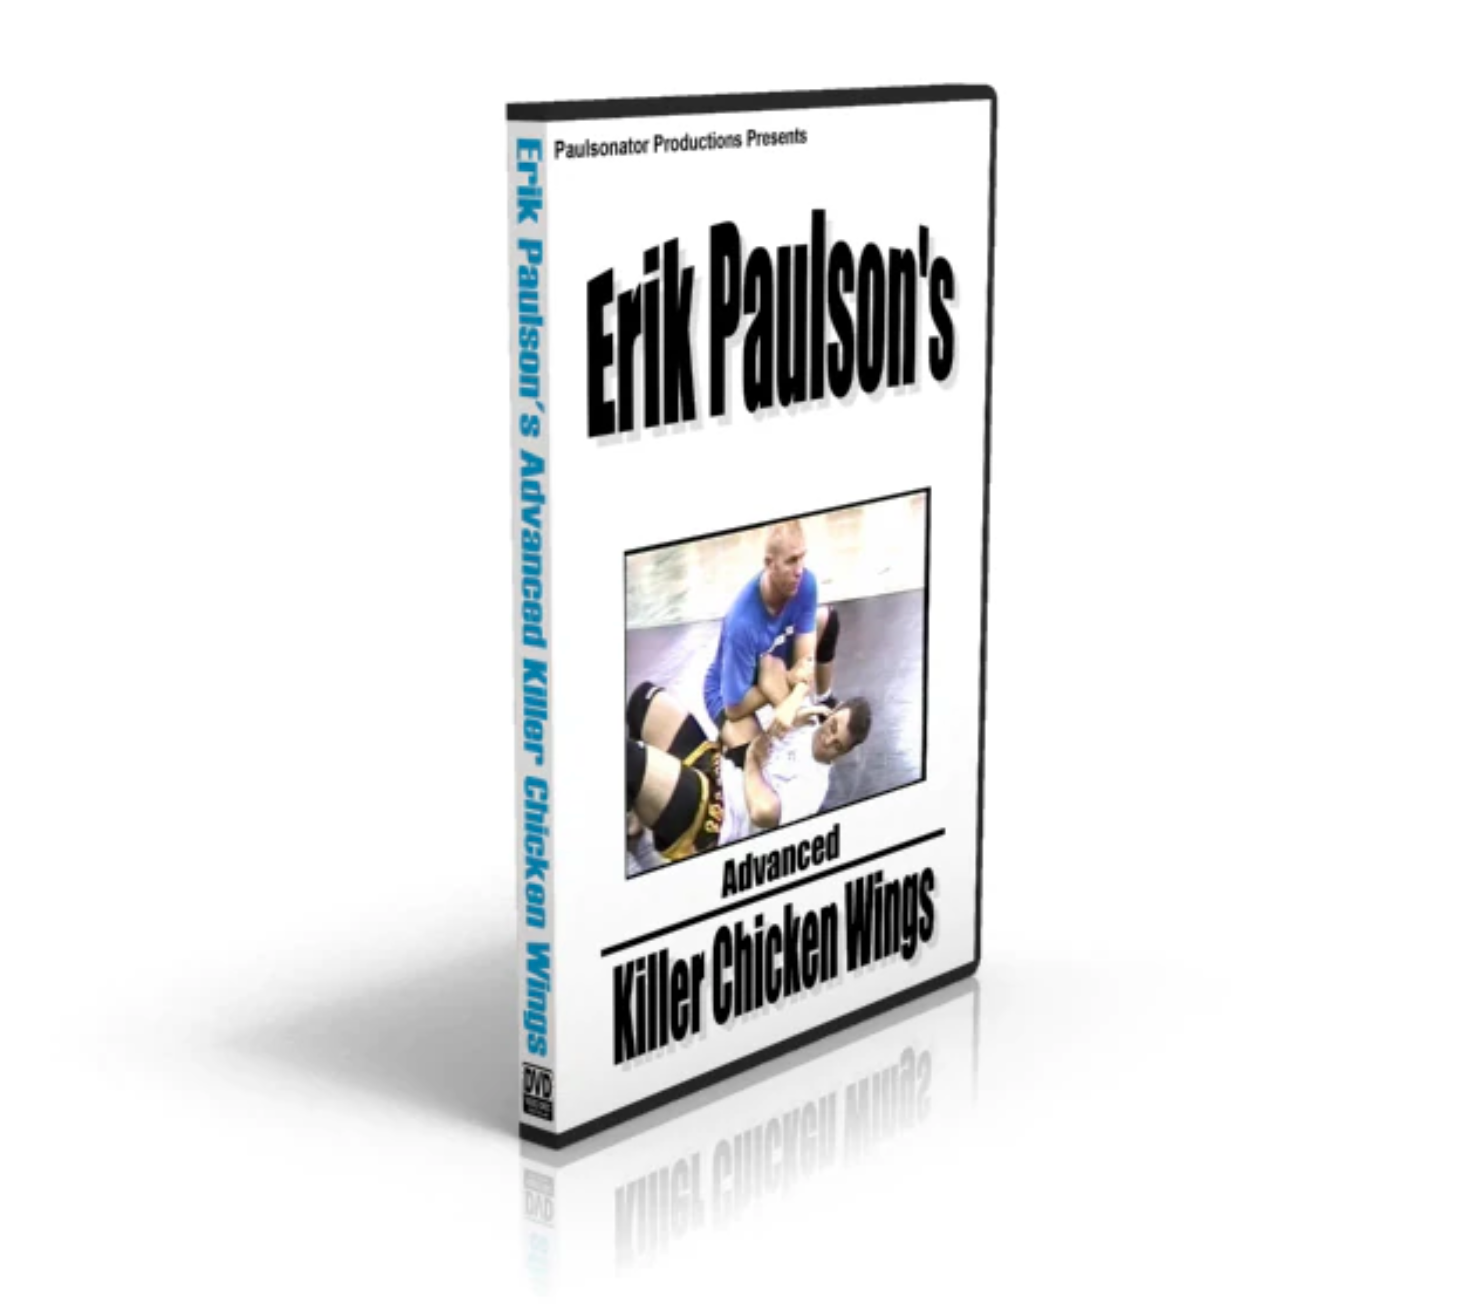 エリック・ポールソン著『アドバンスド・キラー・チキン・ウィング』DVD